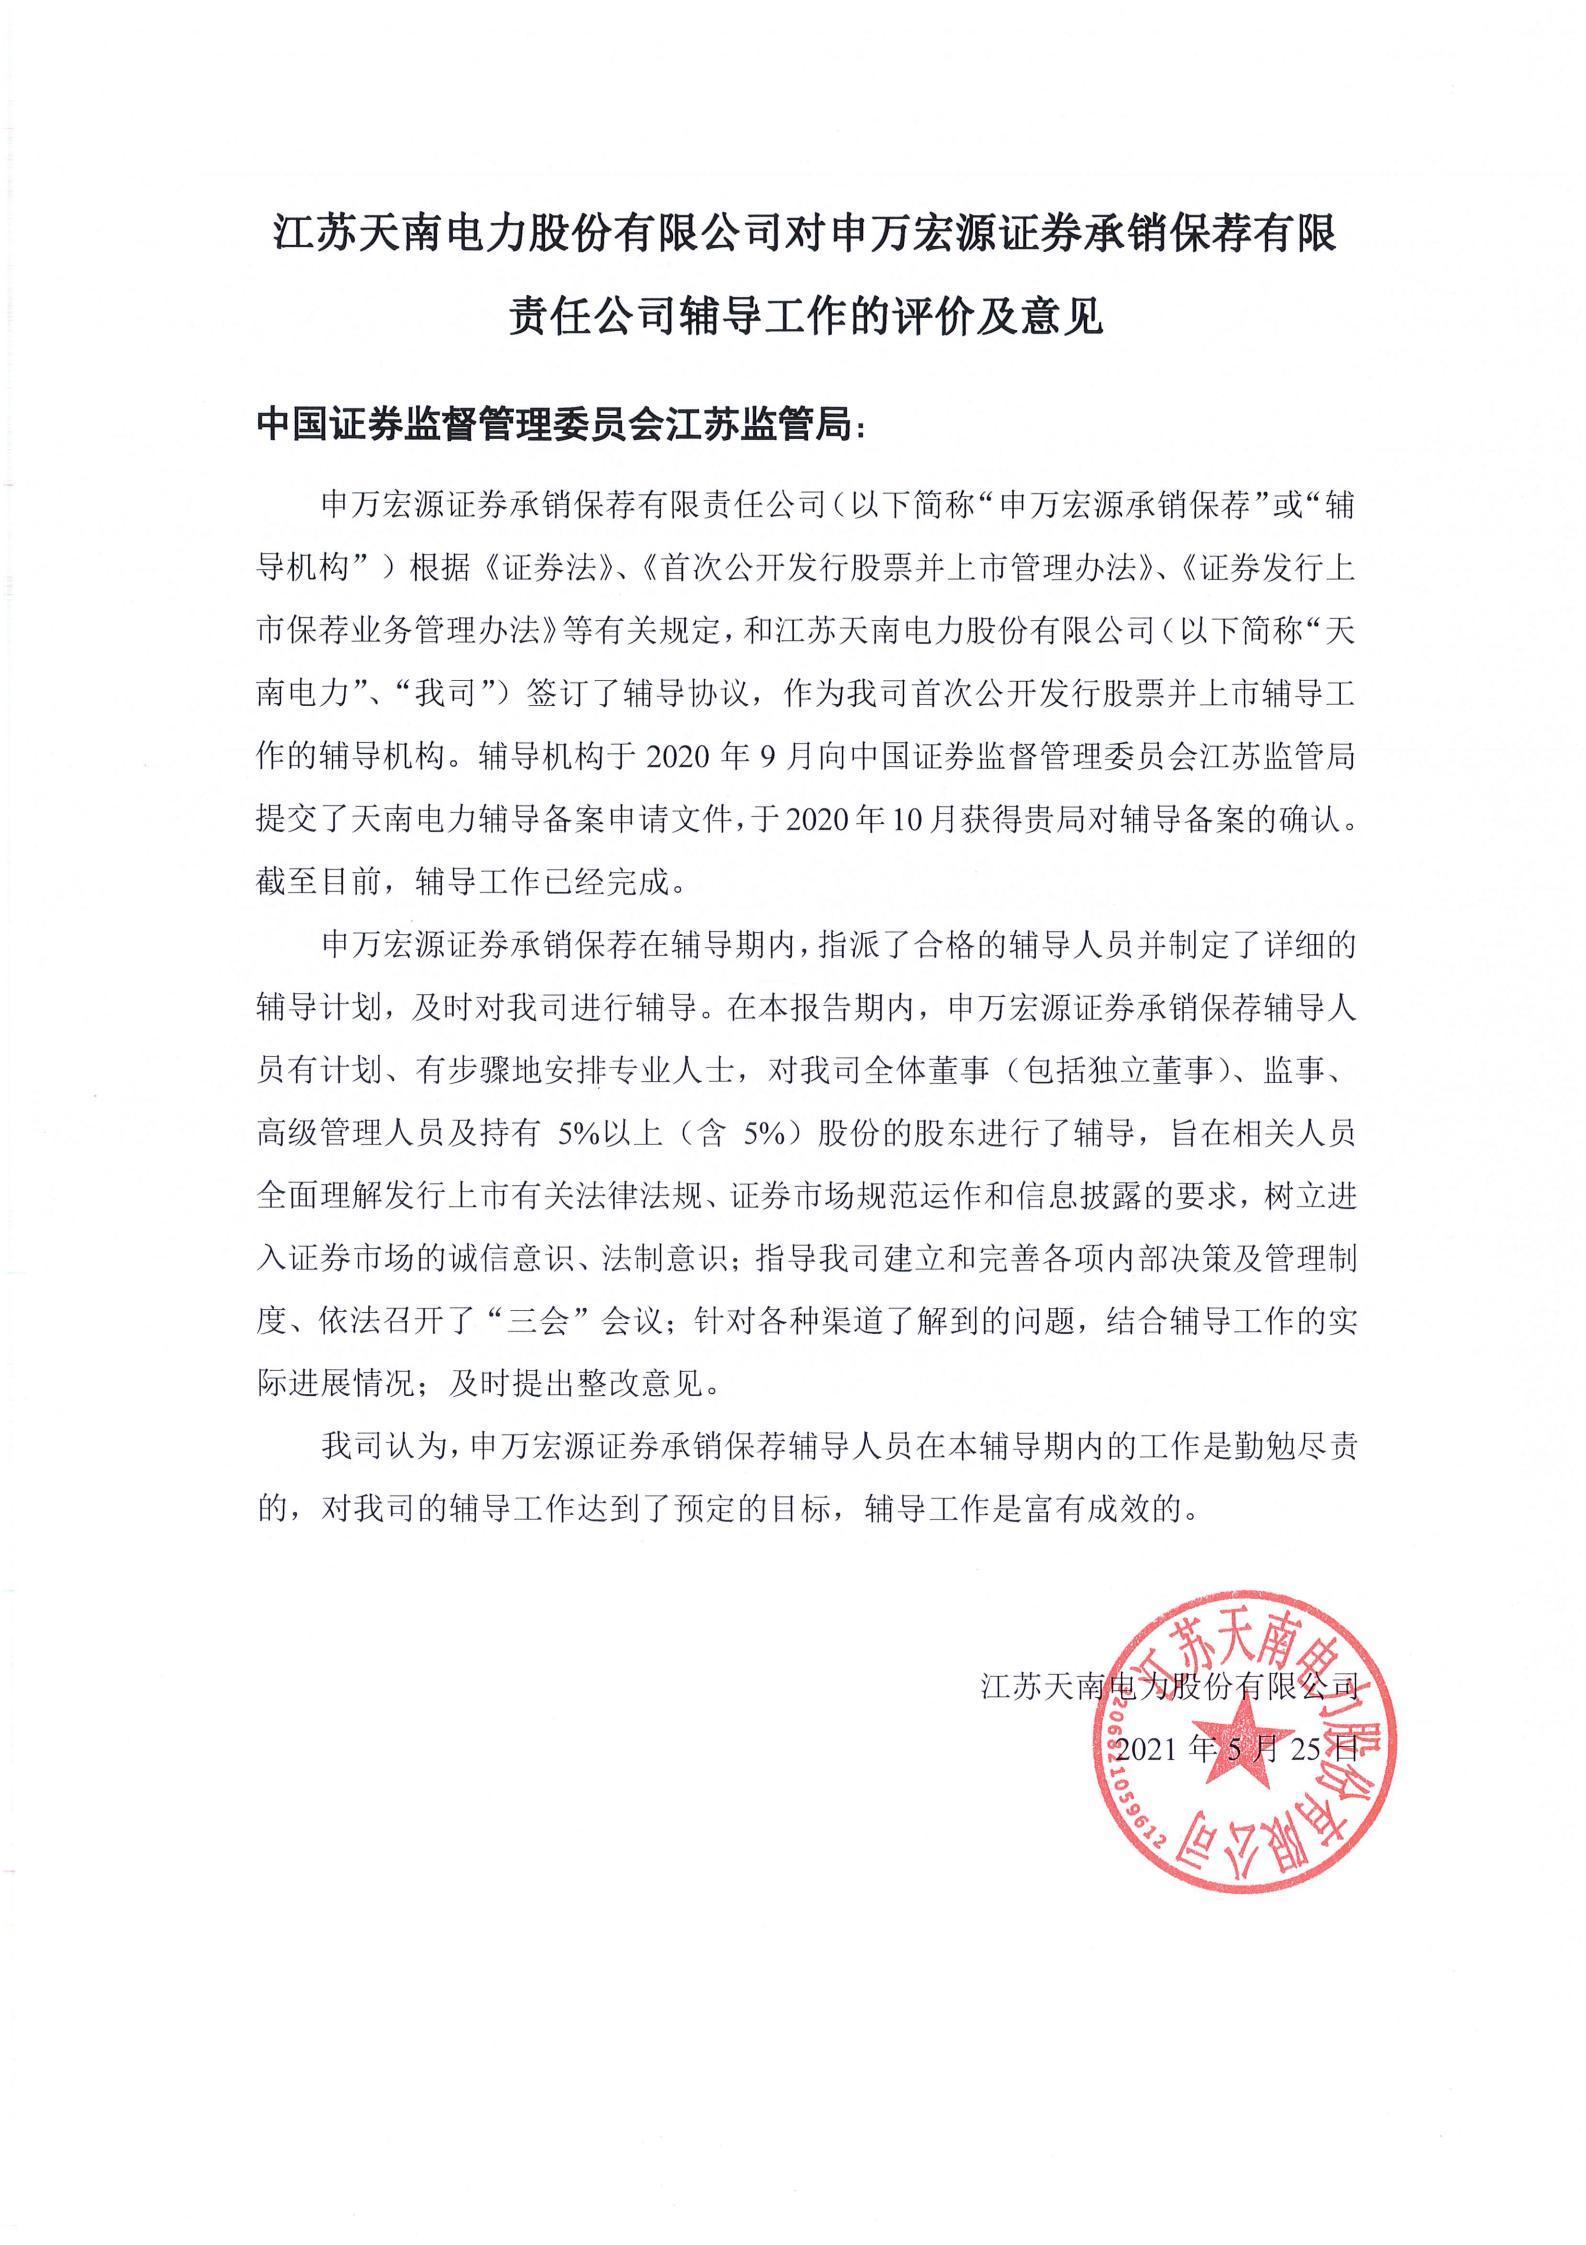 江苏天南电力股份有限公司对申万宏源证券承销保荐有限责任公司辅导工作的评价及意见